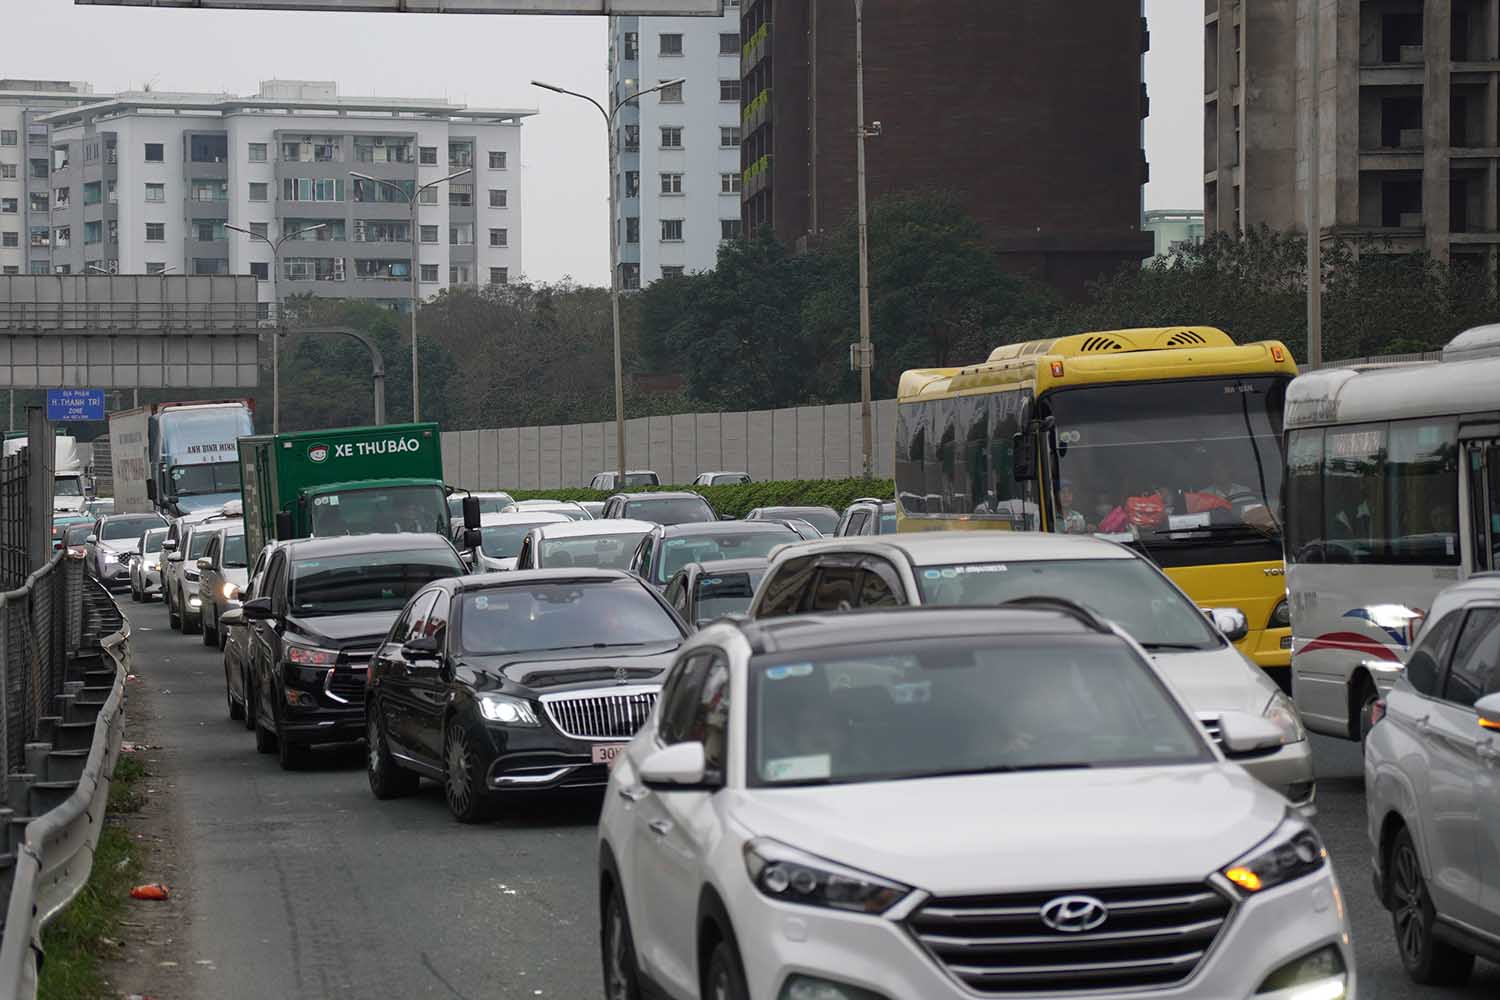 Từ giờ đến tối muộn, tình hình ùn tắc giao thông ở cửa ngõ Nam Hà Nội được dự báo sẽ vẫn căng thẳng. Ảnh: Hữu Chánh